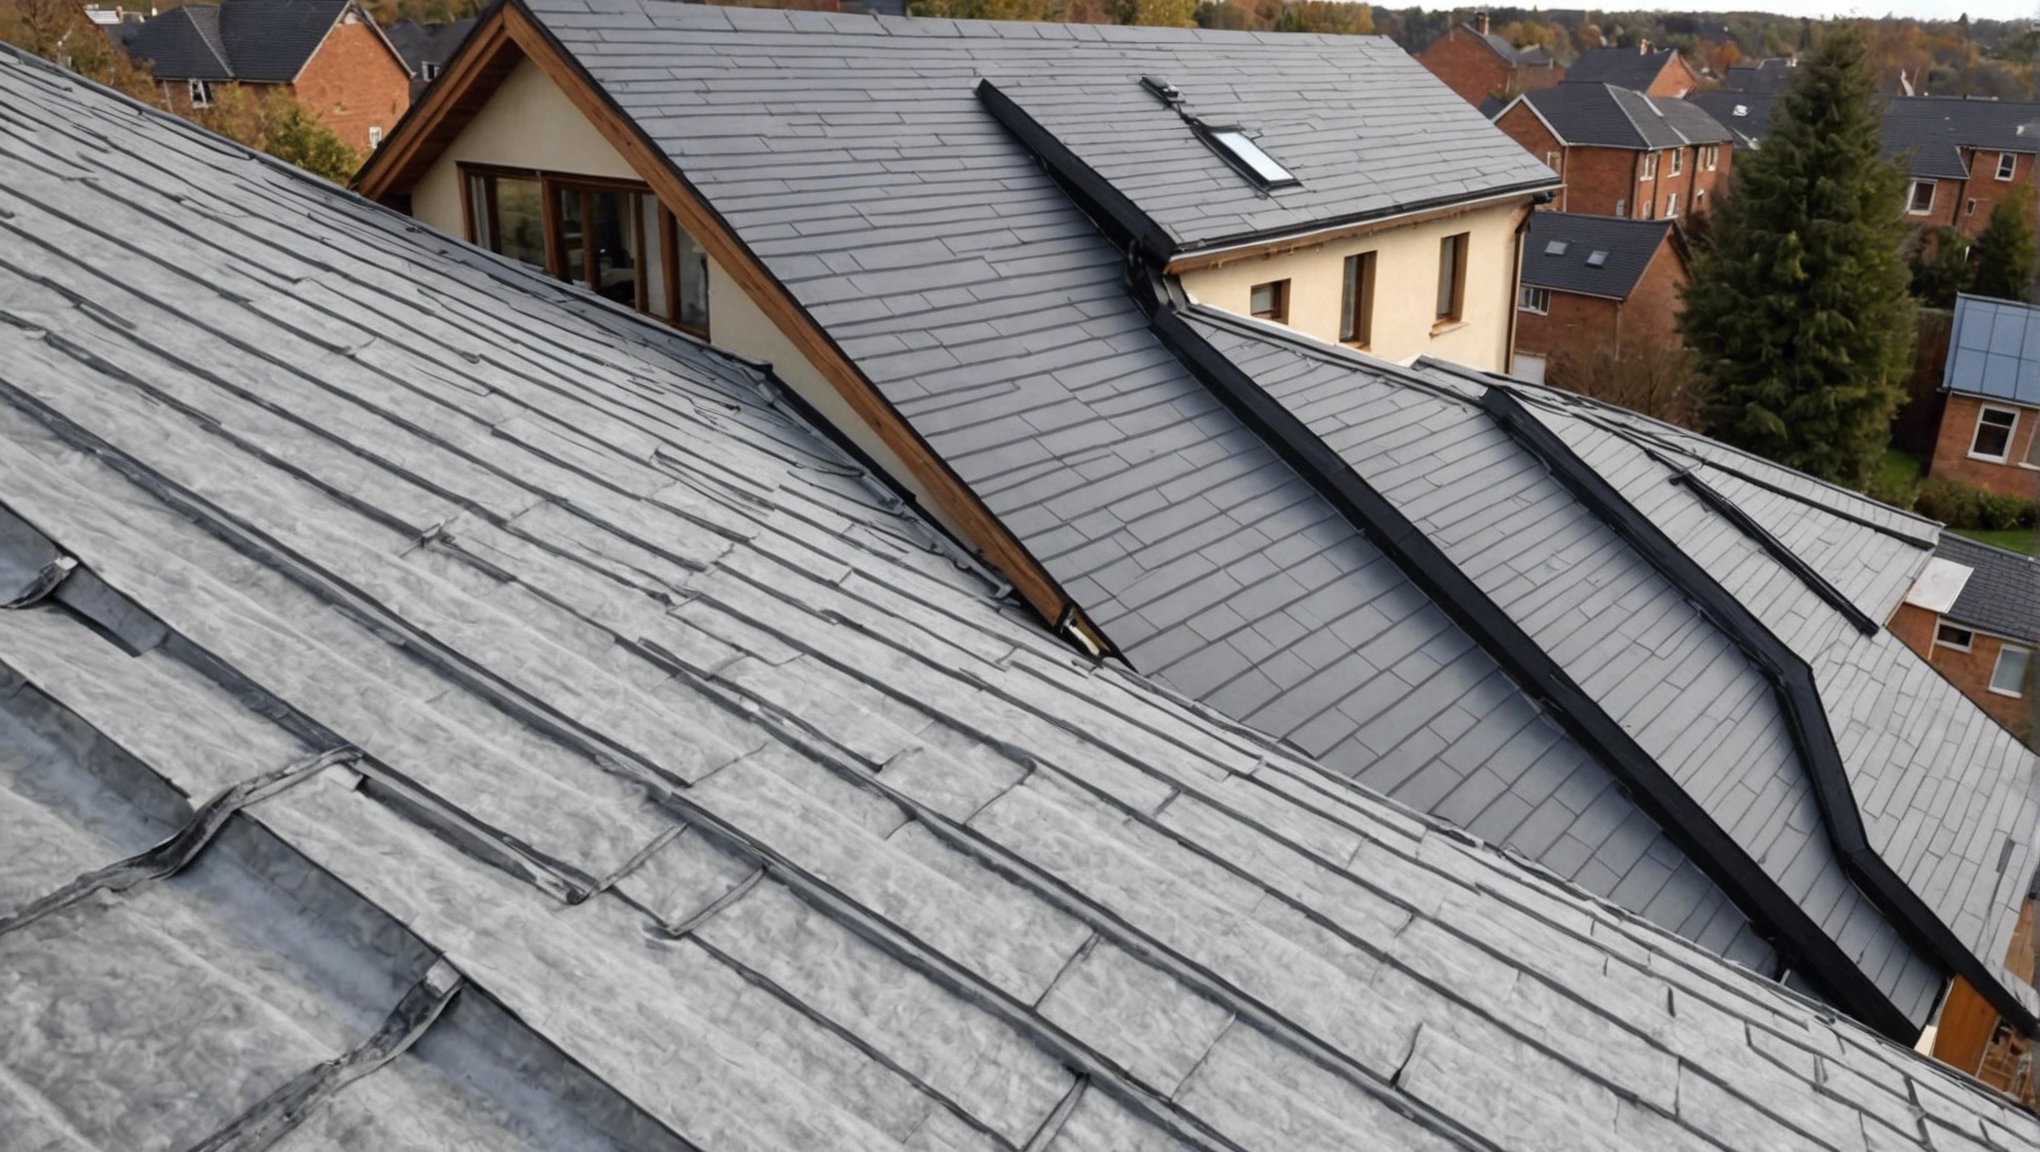 découvrez les meilleures techniques pour réussir l'isolation de votre toiture par l'extérieur et profitez d'un confort thermique optimal dans votre maison grâce à nos conseils d'experts.